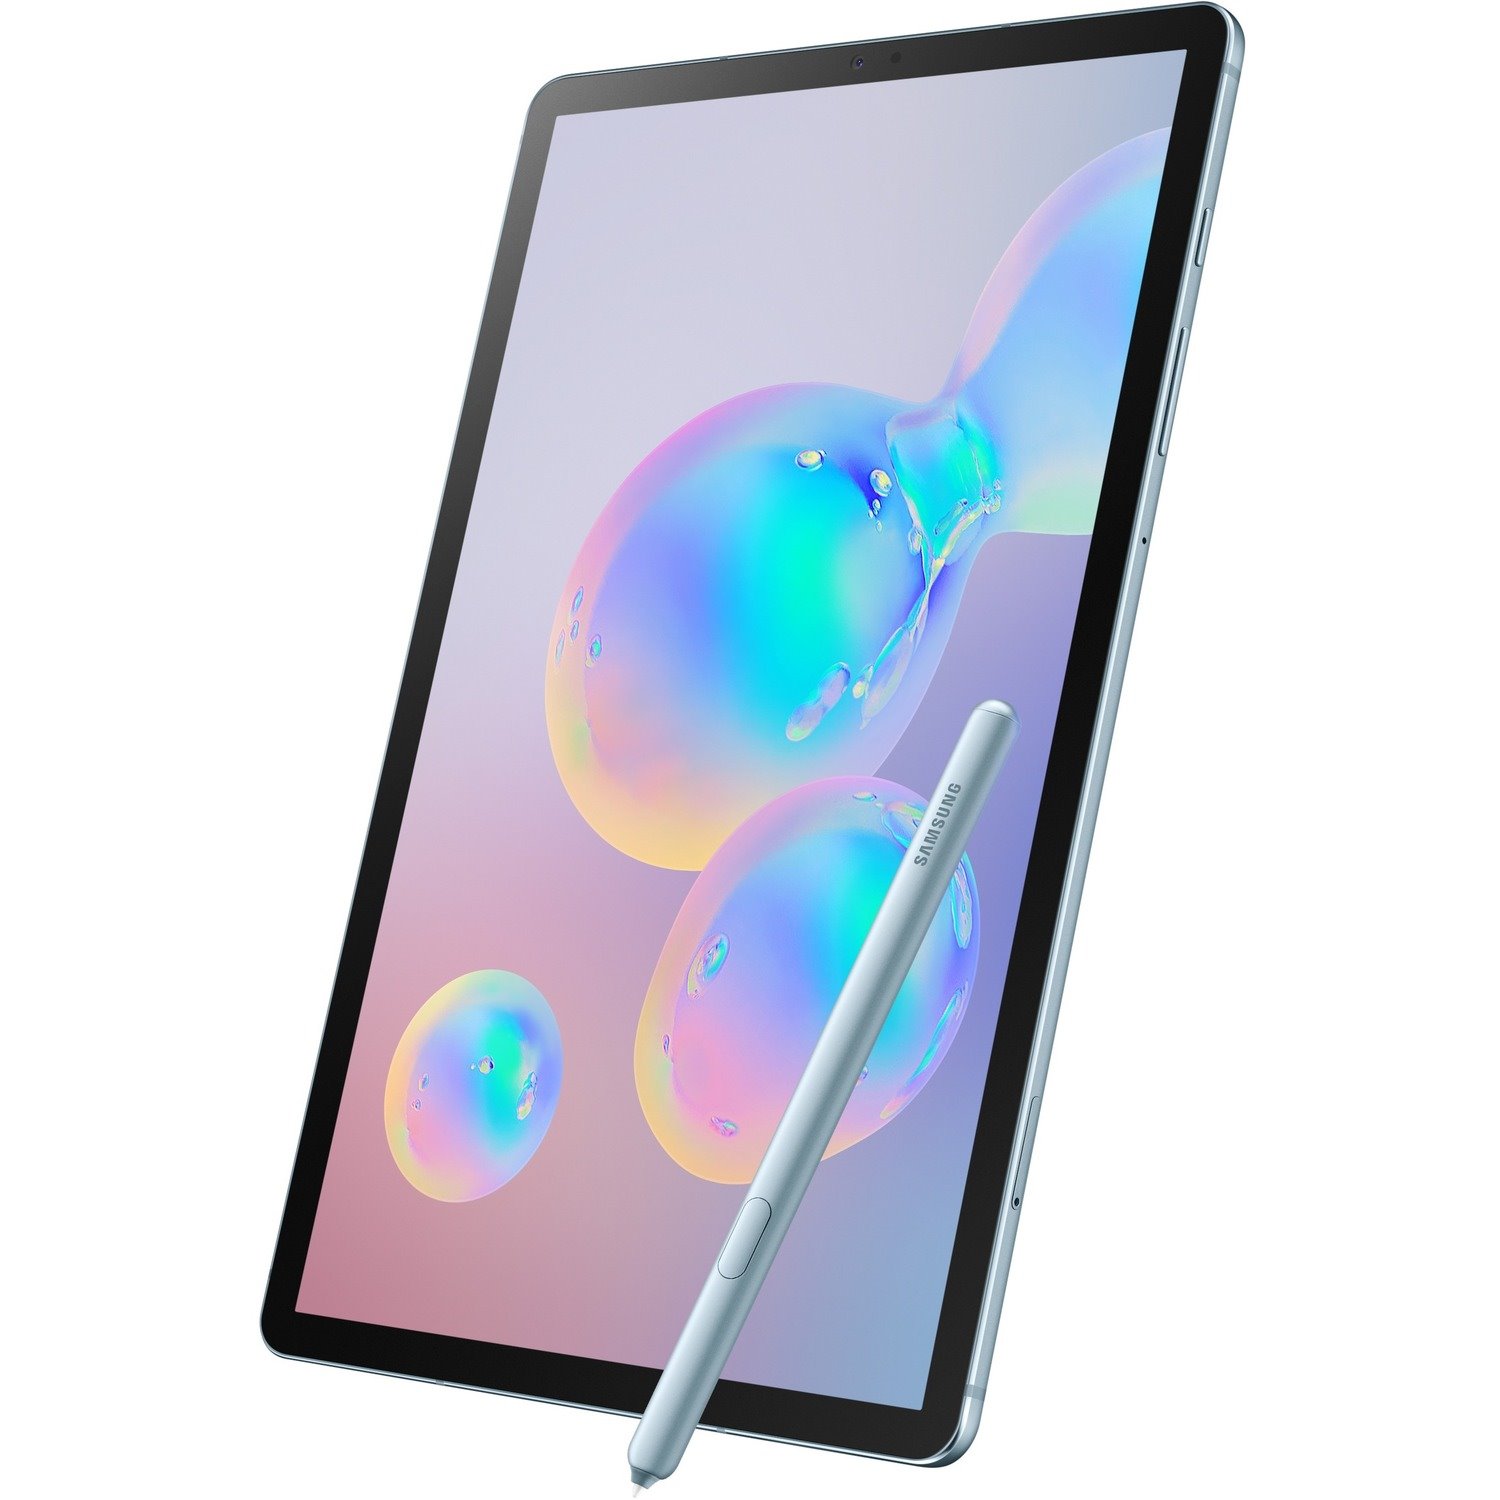 Samsung Galaxy Tab S6 SM-T860 Tablet - 10.5" - Qualcomm SDM855 Snapdragon 855 - 6 GB - 128 GB Storage - Android 9.0 Pie - Cloud Blue